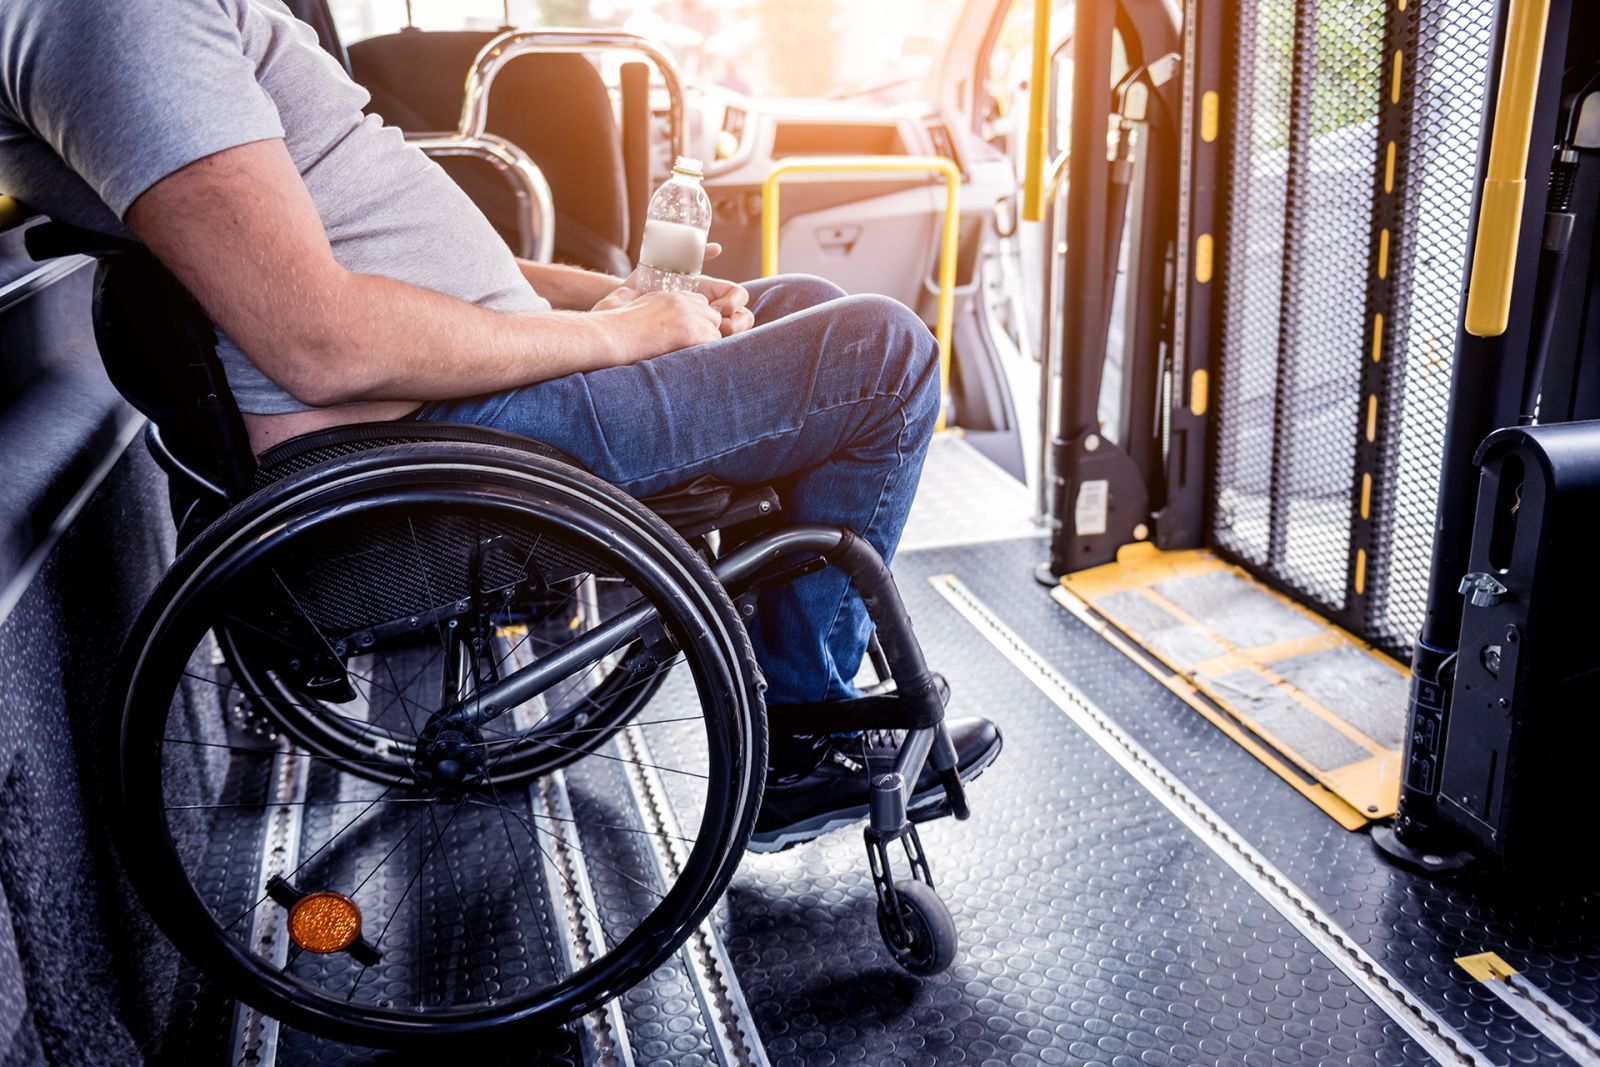 Servicios gratuitos de autobús y taxi para personas con movilidad reducida para facilitar la participación en el cribado que empieza mañana